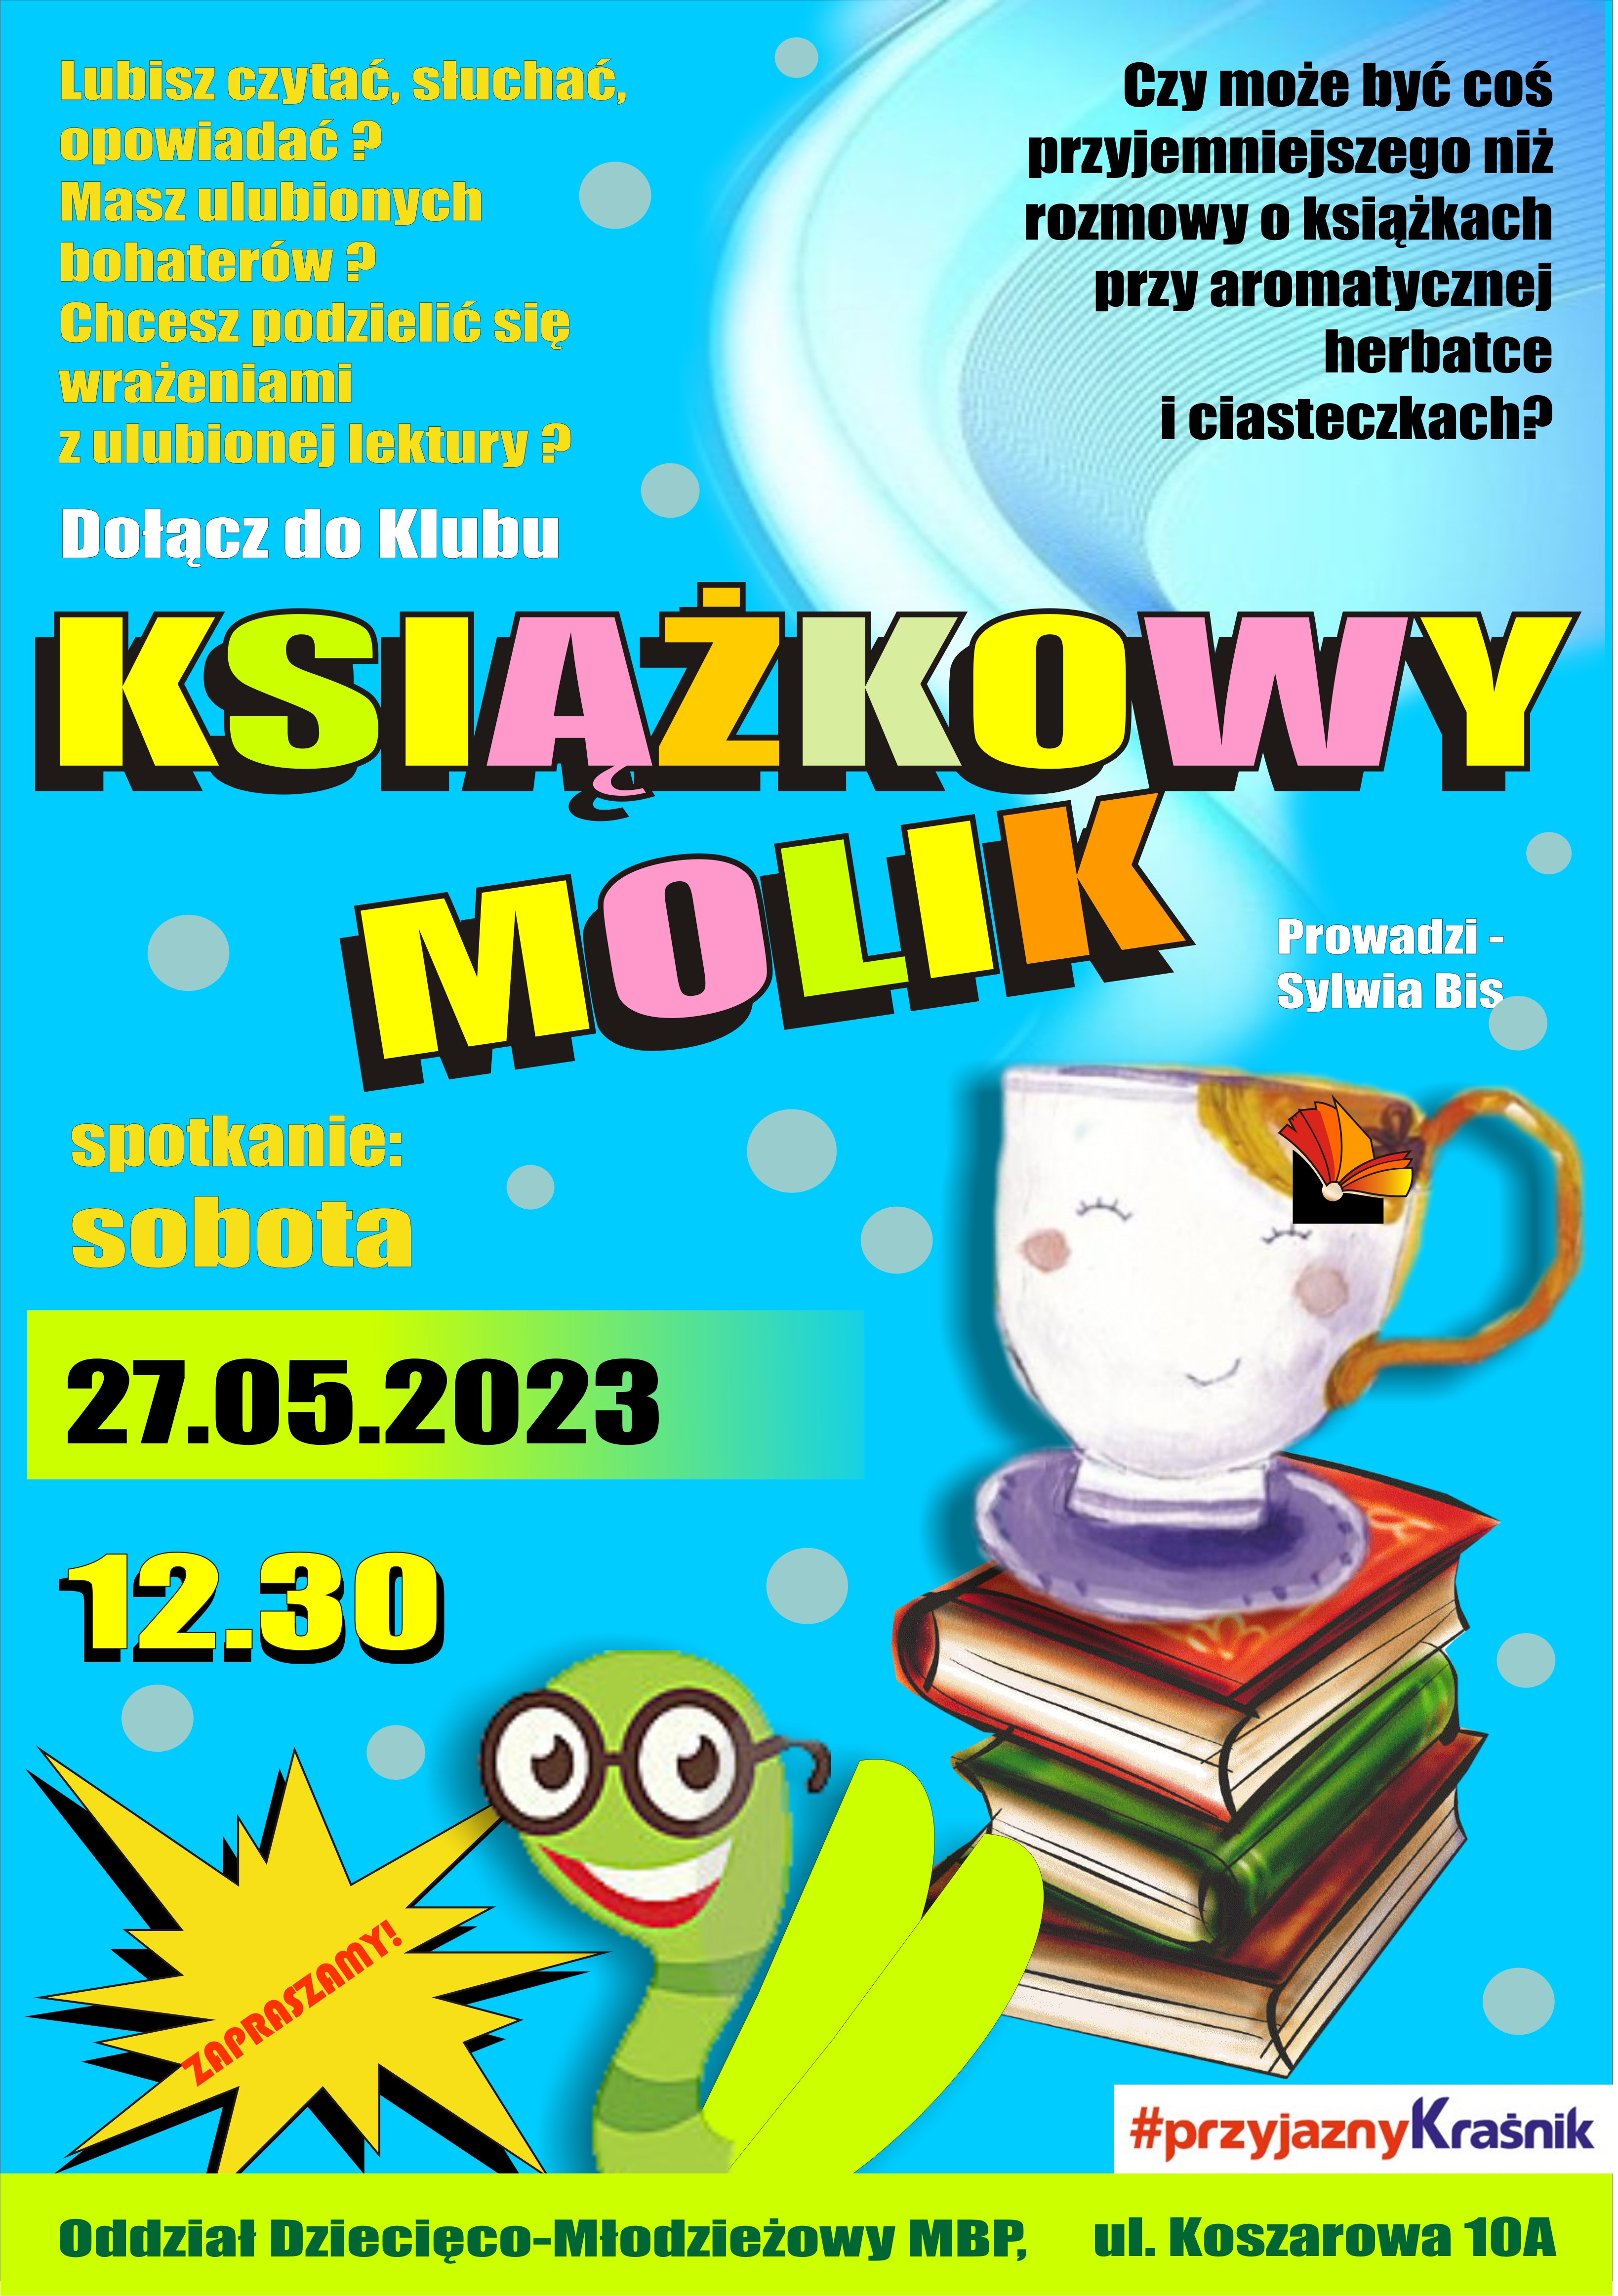 DKK Książkowy Molik w MBP Kraśnik